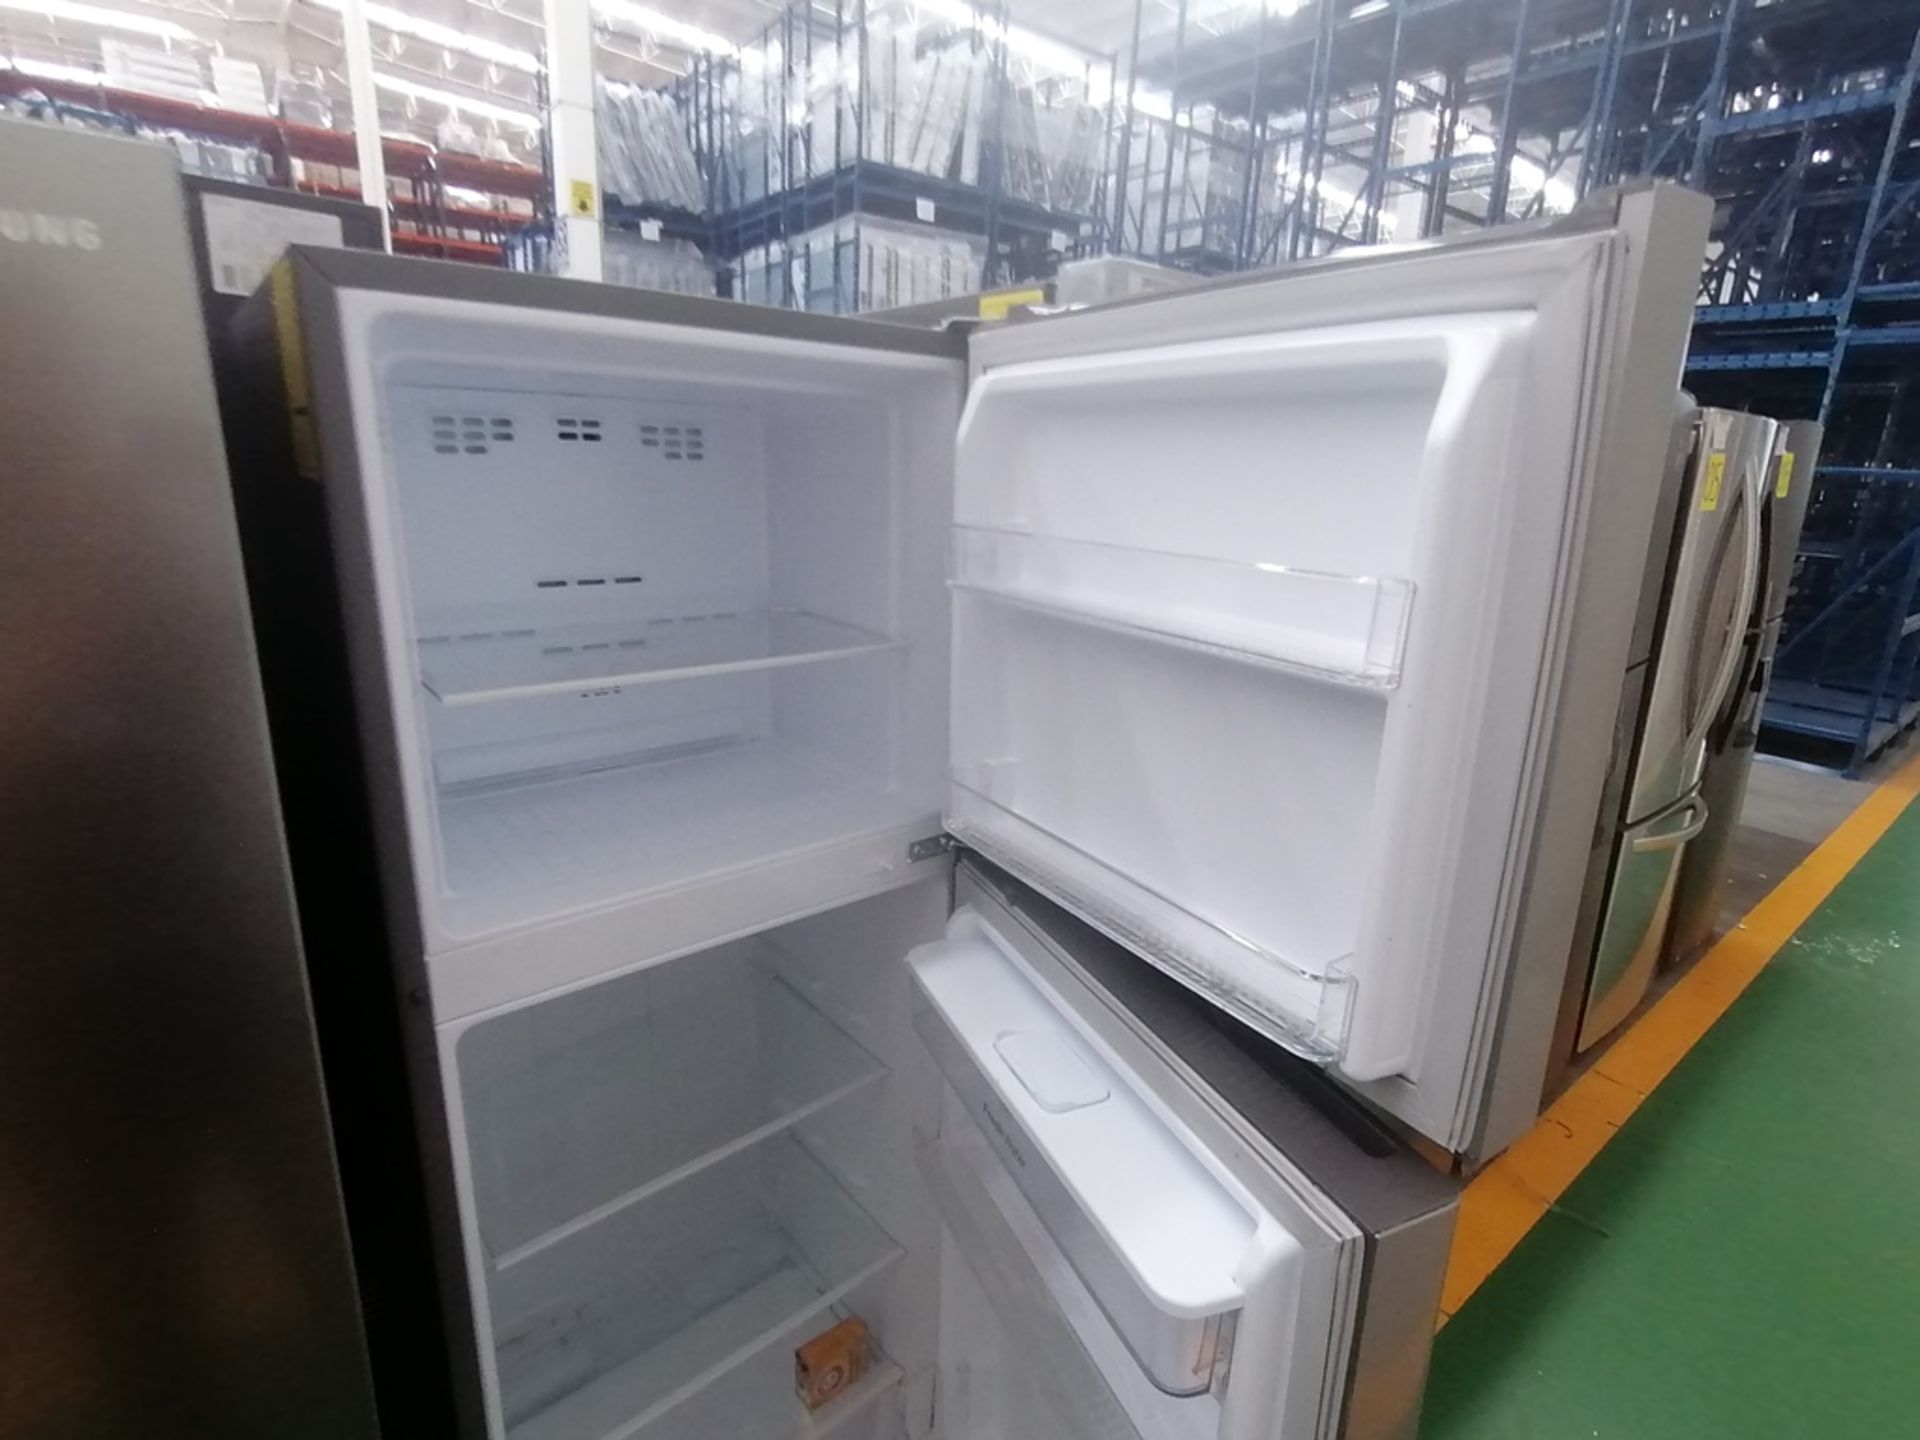 Lote de 2 refrigeradores incluye: 1 Refrigerador con dispensador de agua, Marca Winia, Modelo DFR40 - Image 13 of 16